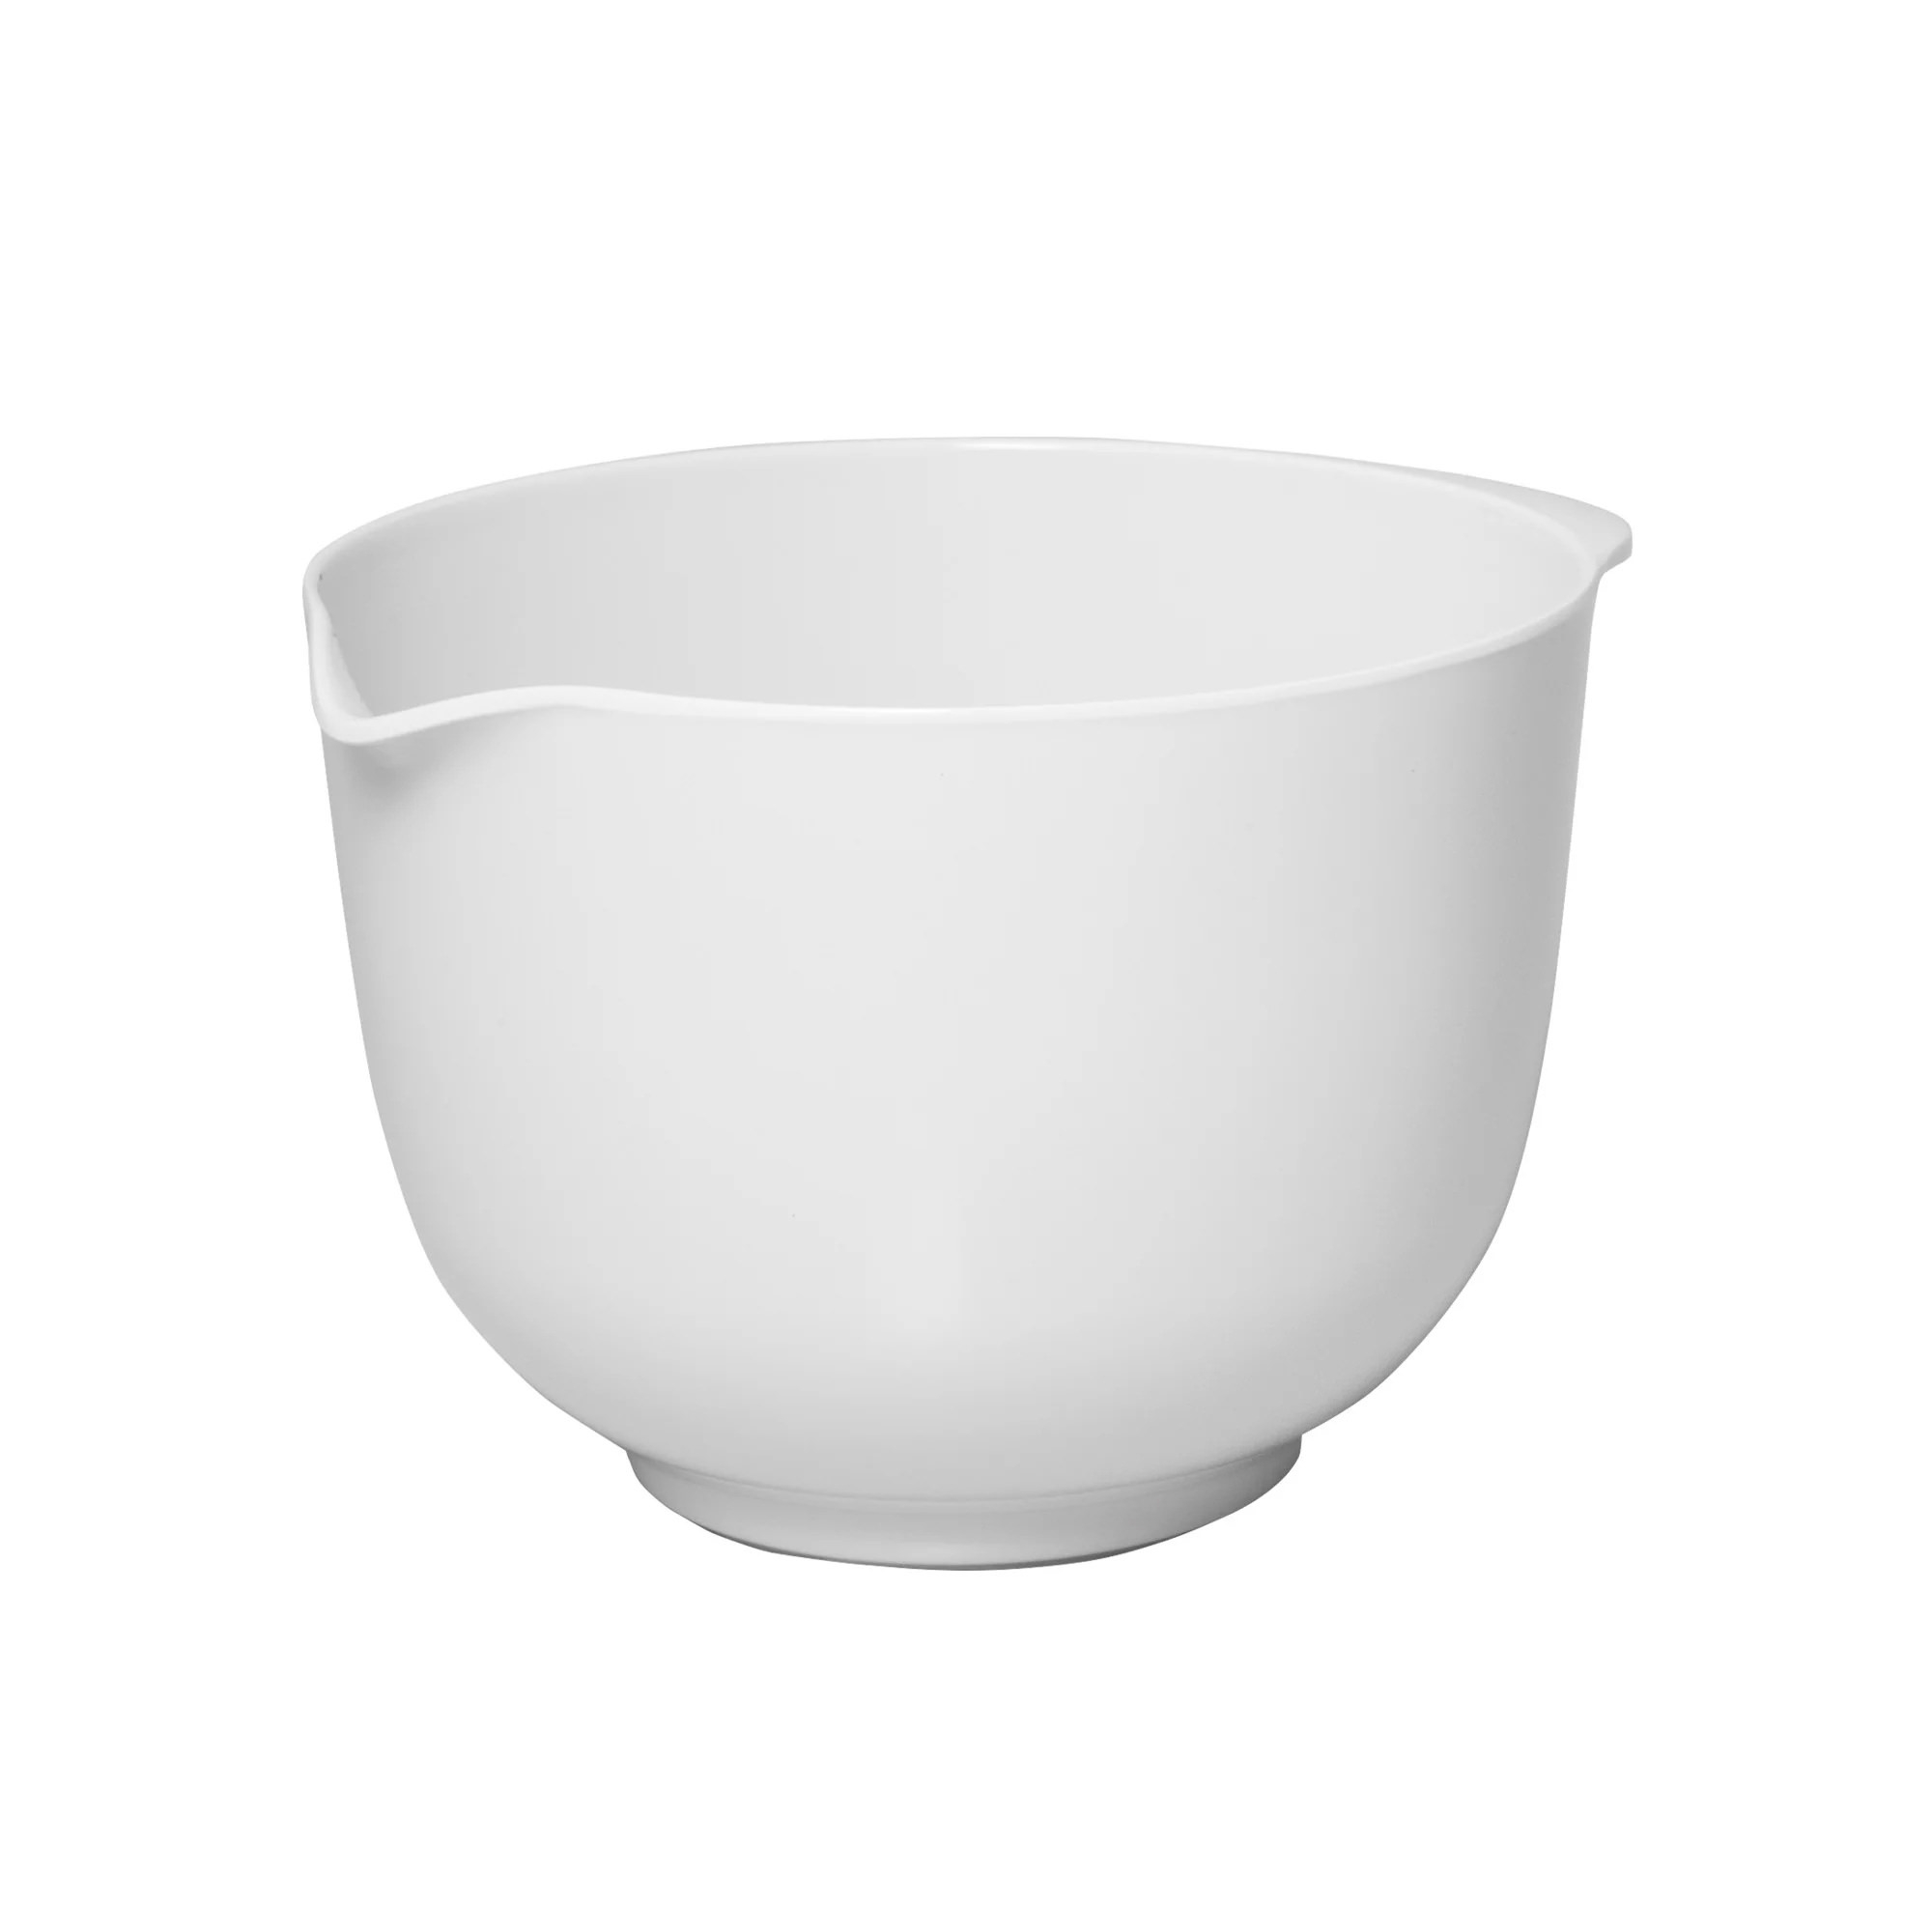 Avanti Melamine Mixing Bowl 16cm - 1.5L White Image 1